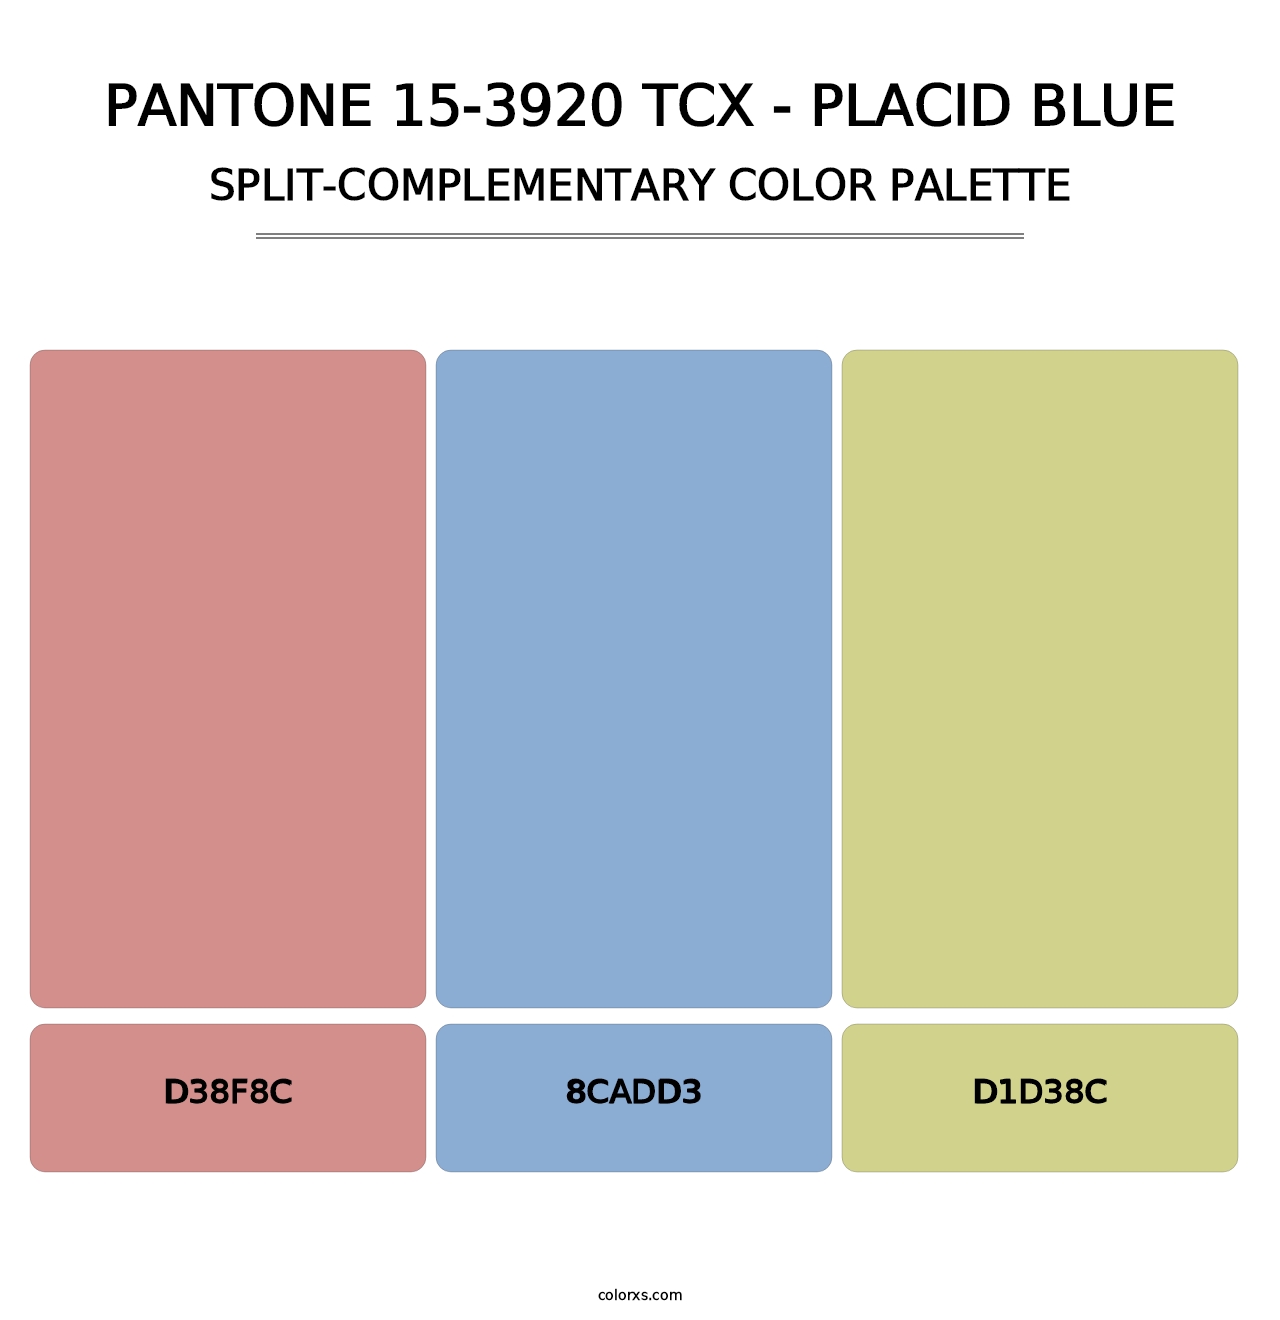 PANTONE 15-3920 TCX - Placid Blue - Split-Complementary Color Palette